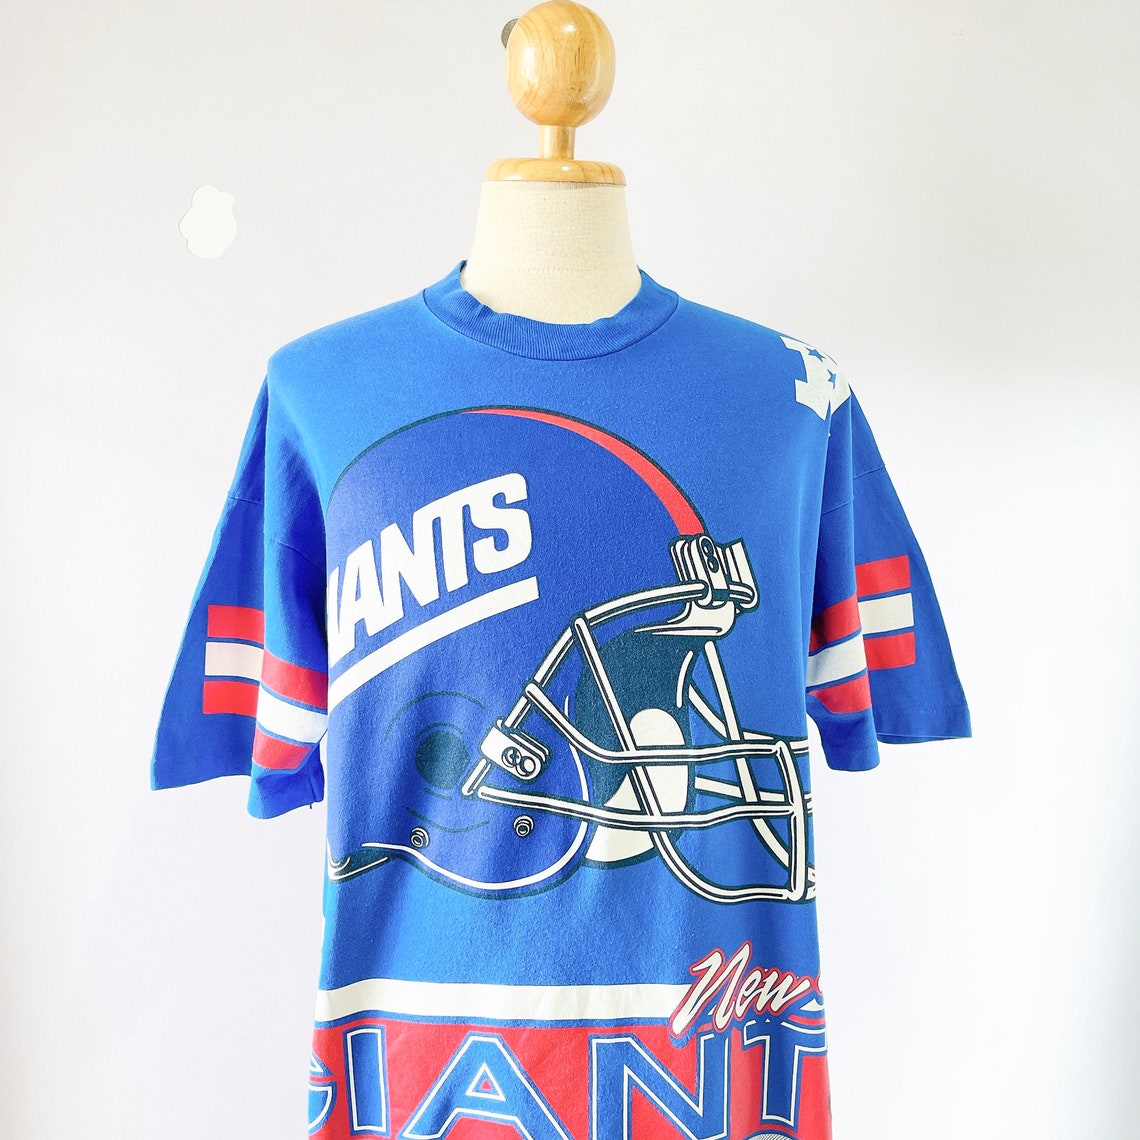 Vintage New York Giants NFL Football T-shirt size XL | Etsy